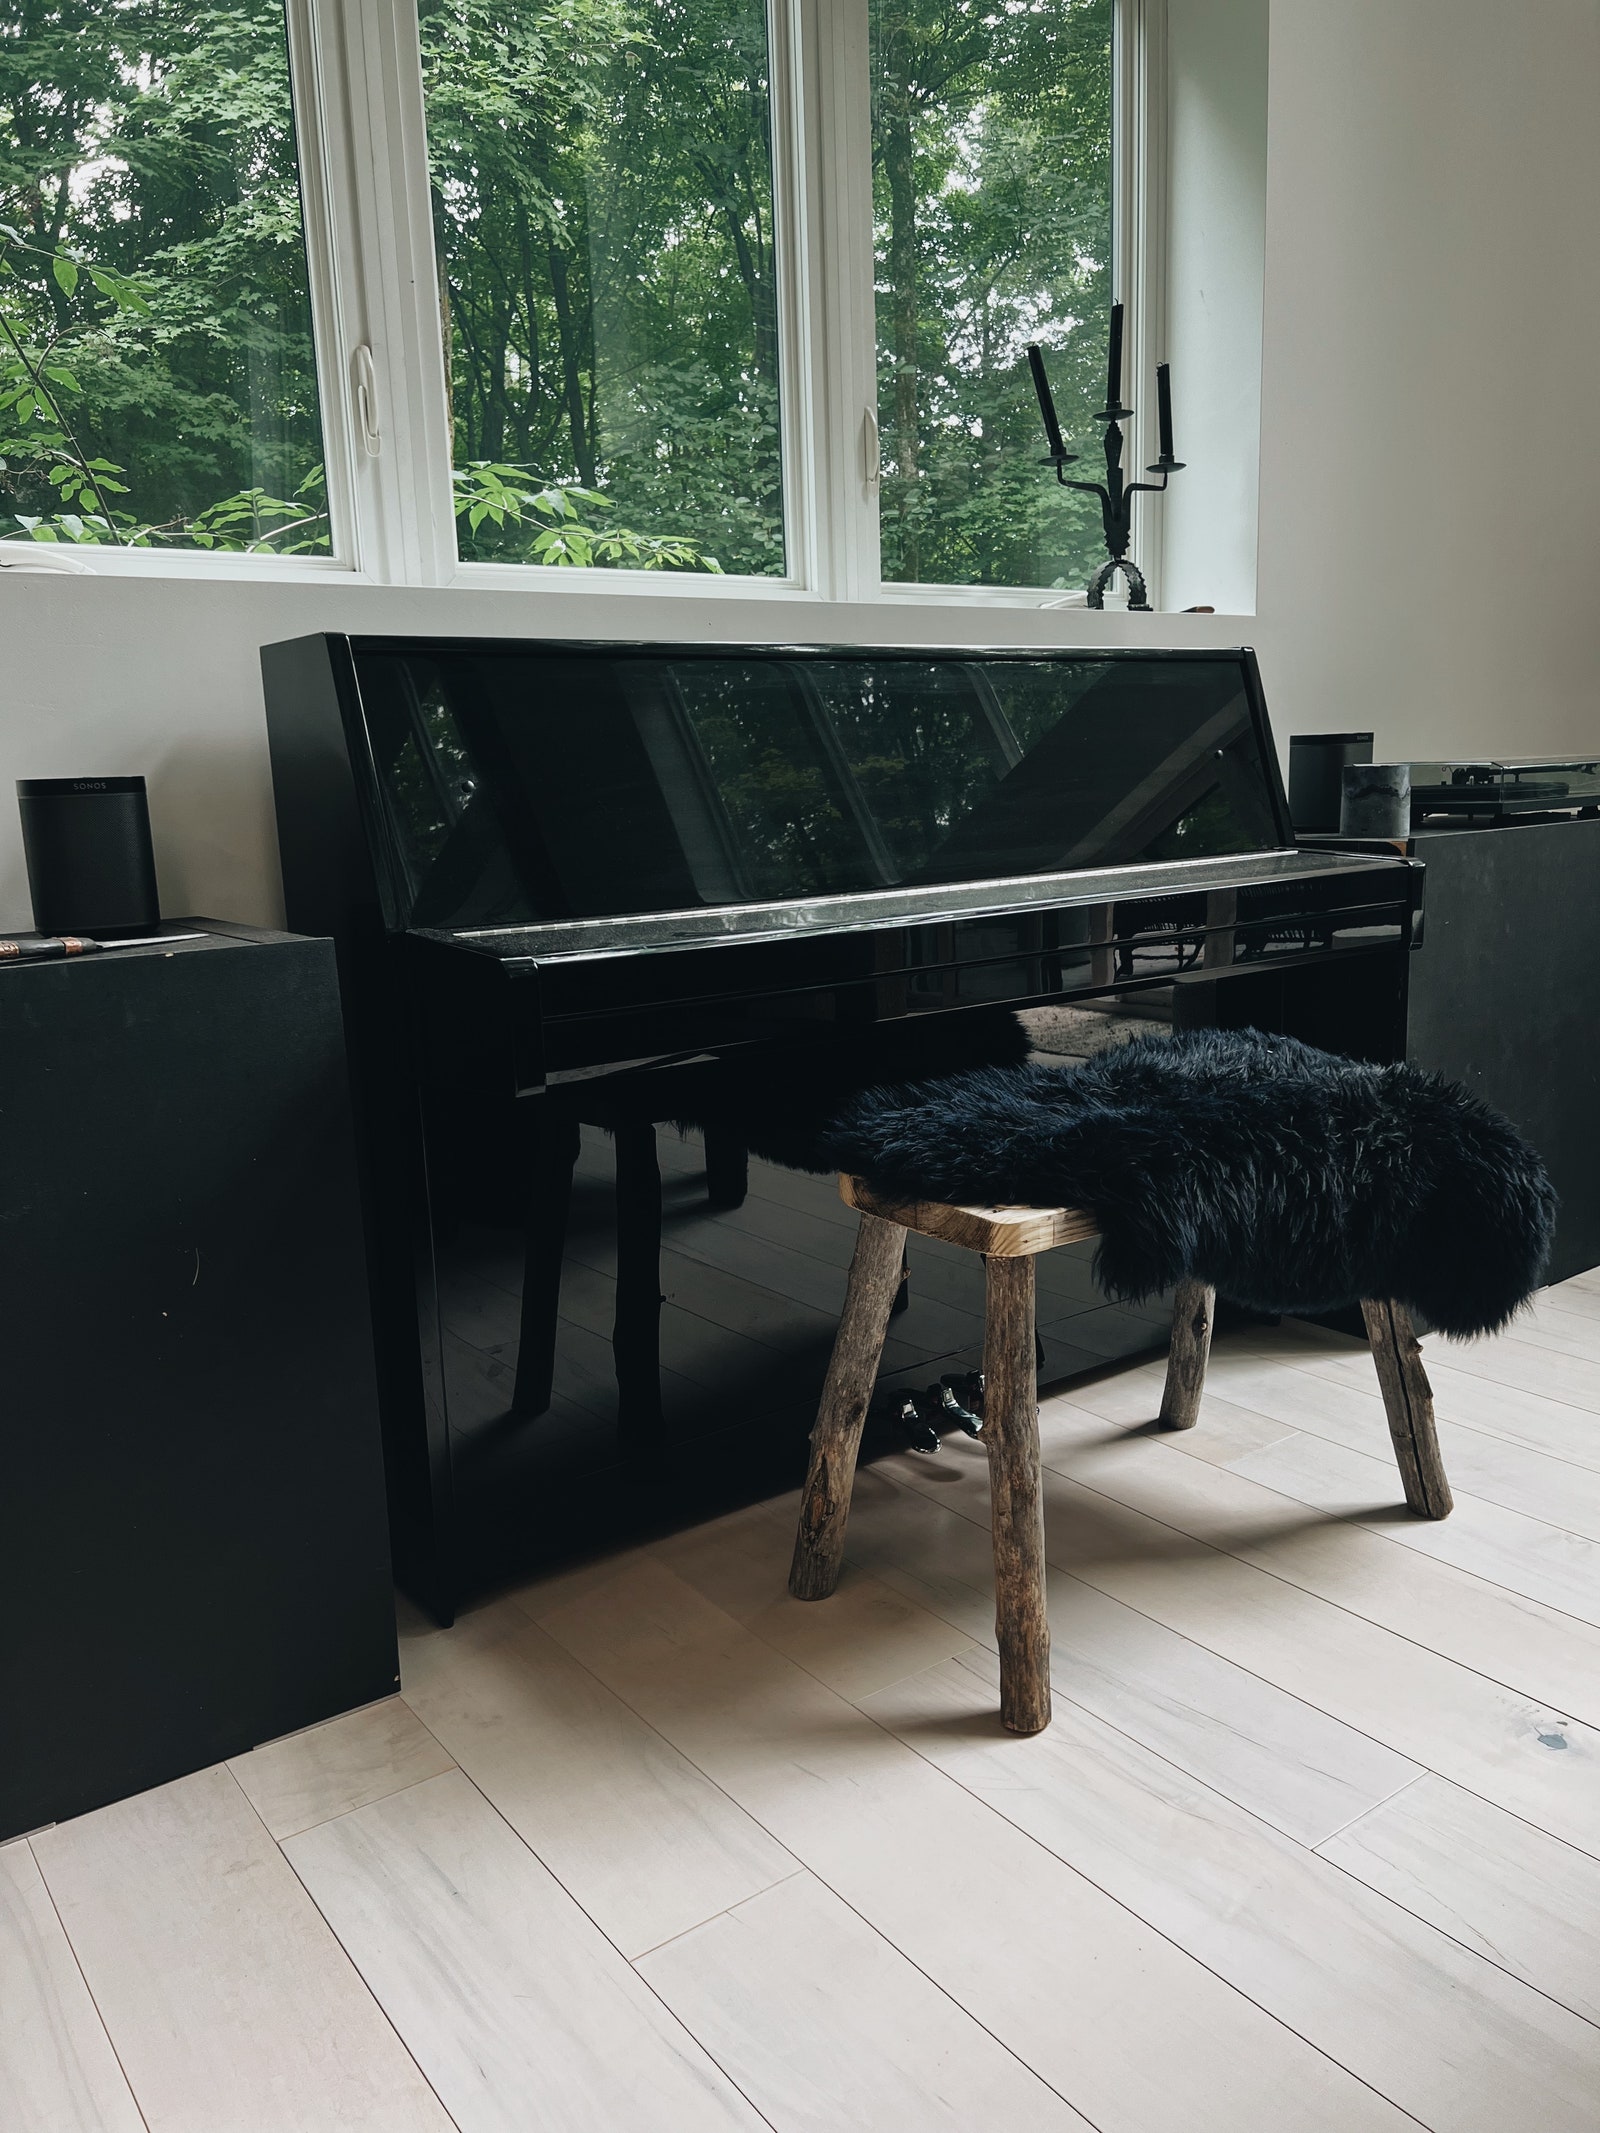 Le piano Yamaha avec un banc de piano en bois fabriqué par le père de Nikas.